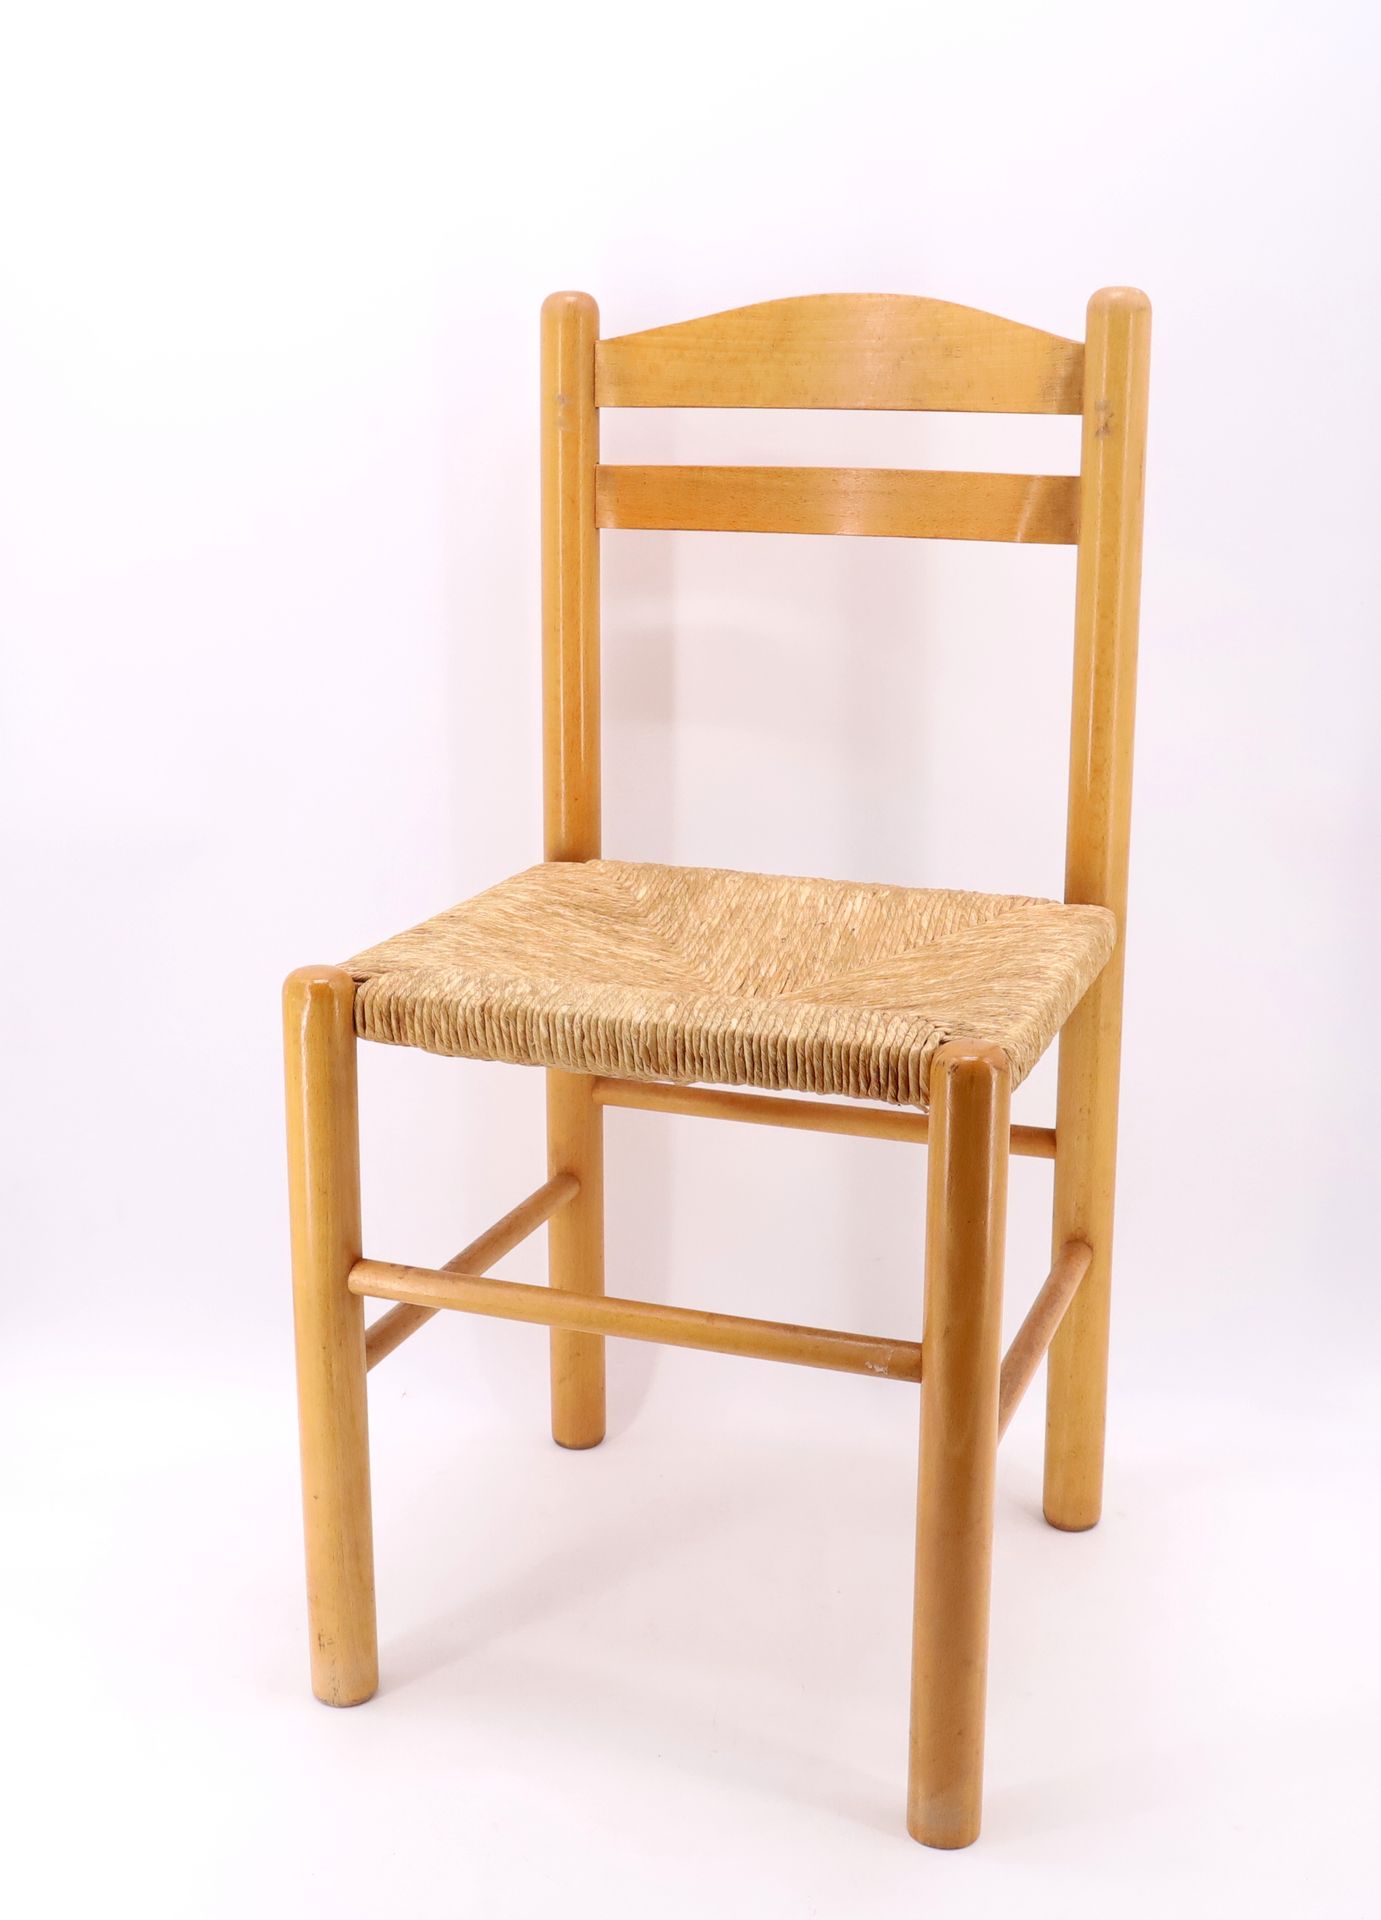 Null 夏洛特-佩里昂(1903-1999)的品味，天然木椅，草席，4条由横木连接的圆形腿 - 高81厘米，宽40厘米，深40厘米（使用时的磨损）。